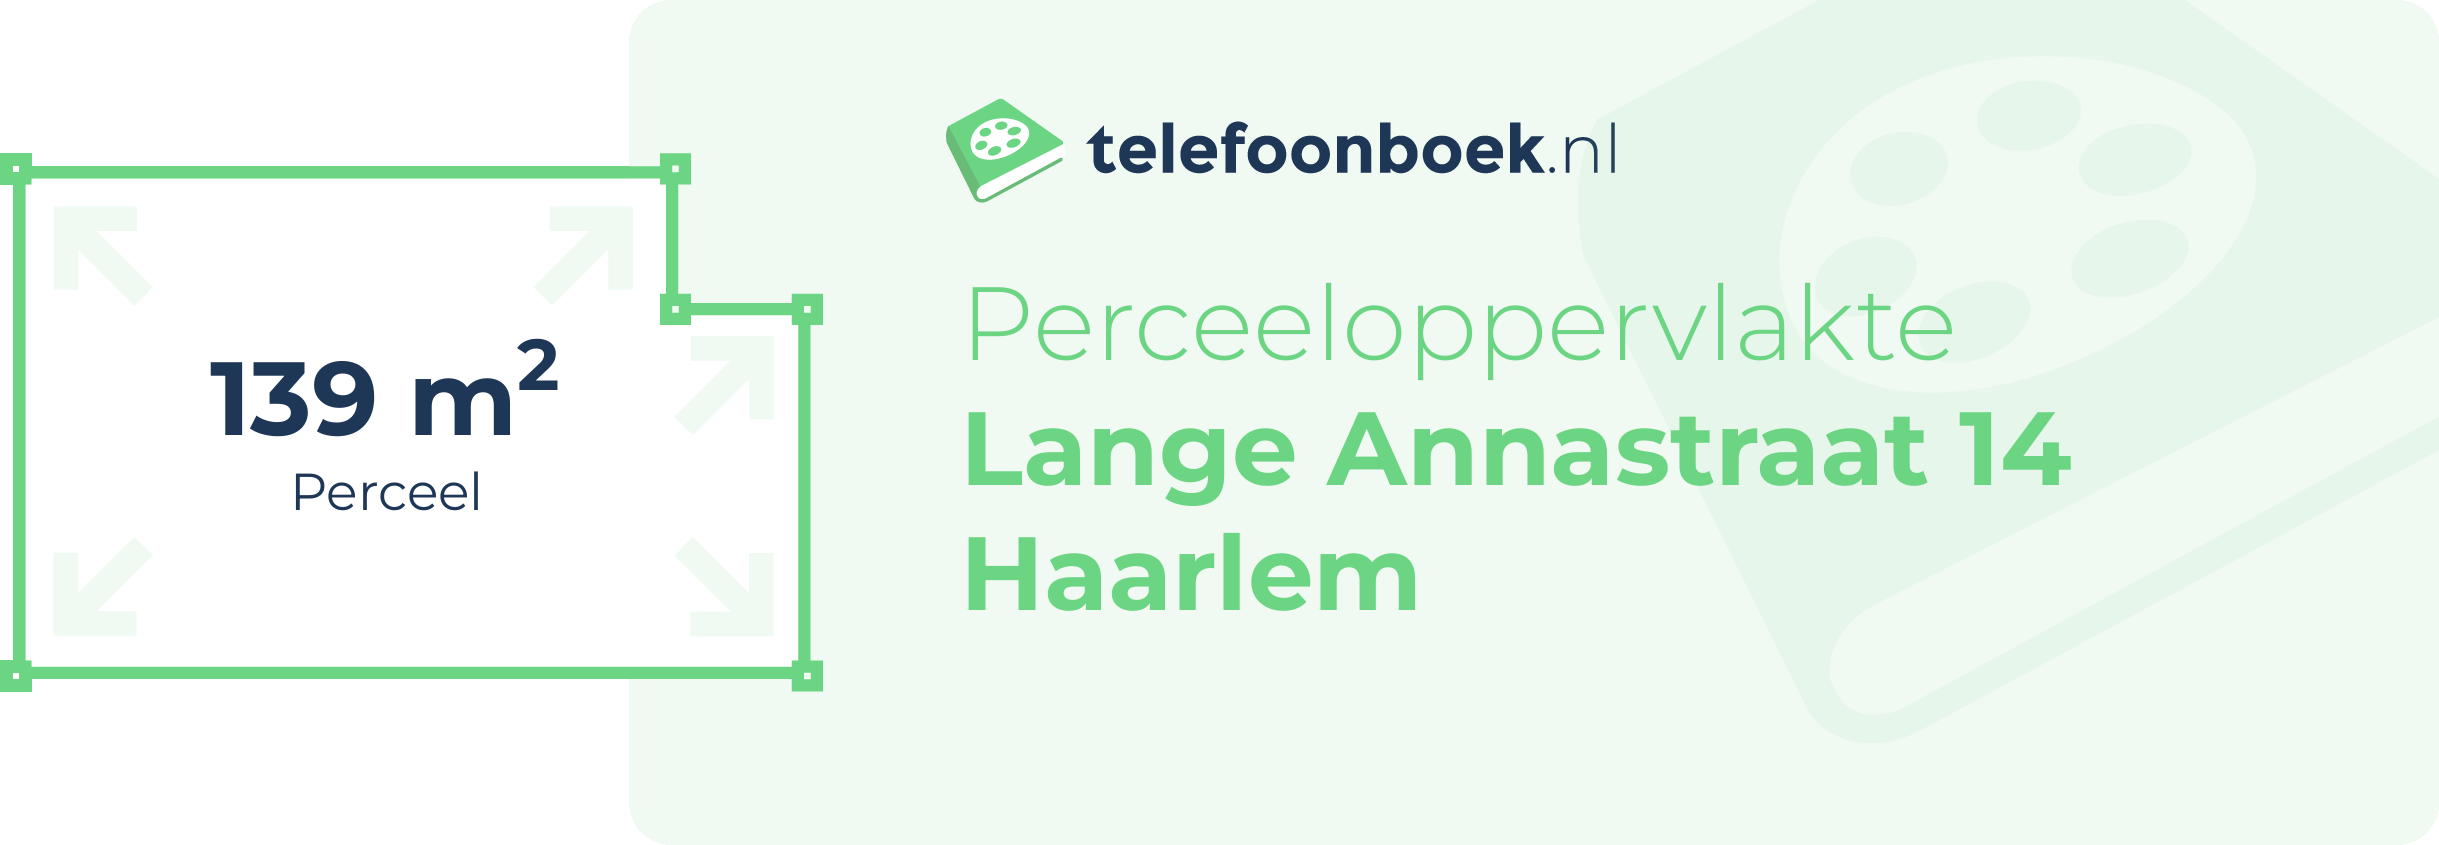 Perceeloppervlakte Lange Annastraat 14 Haarlem